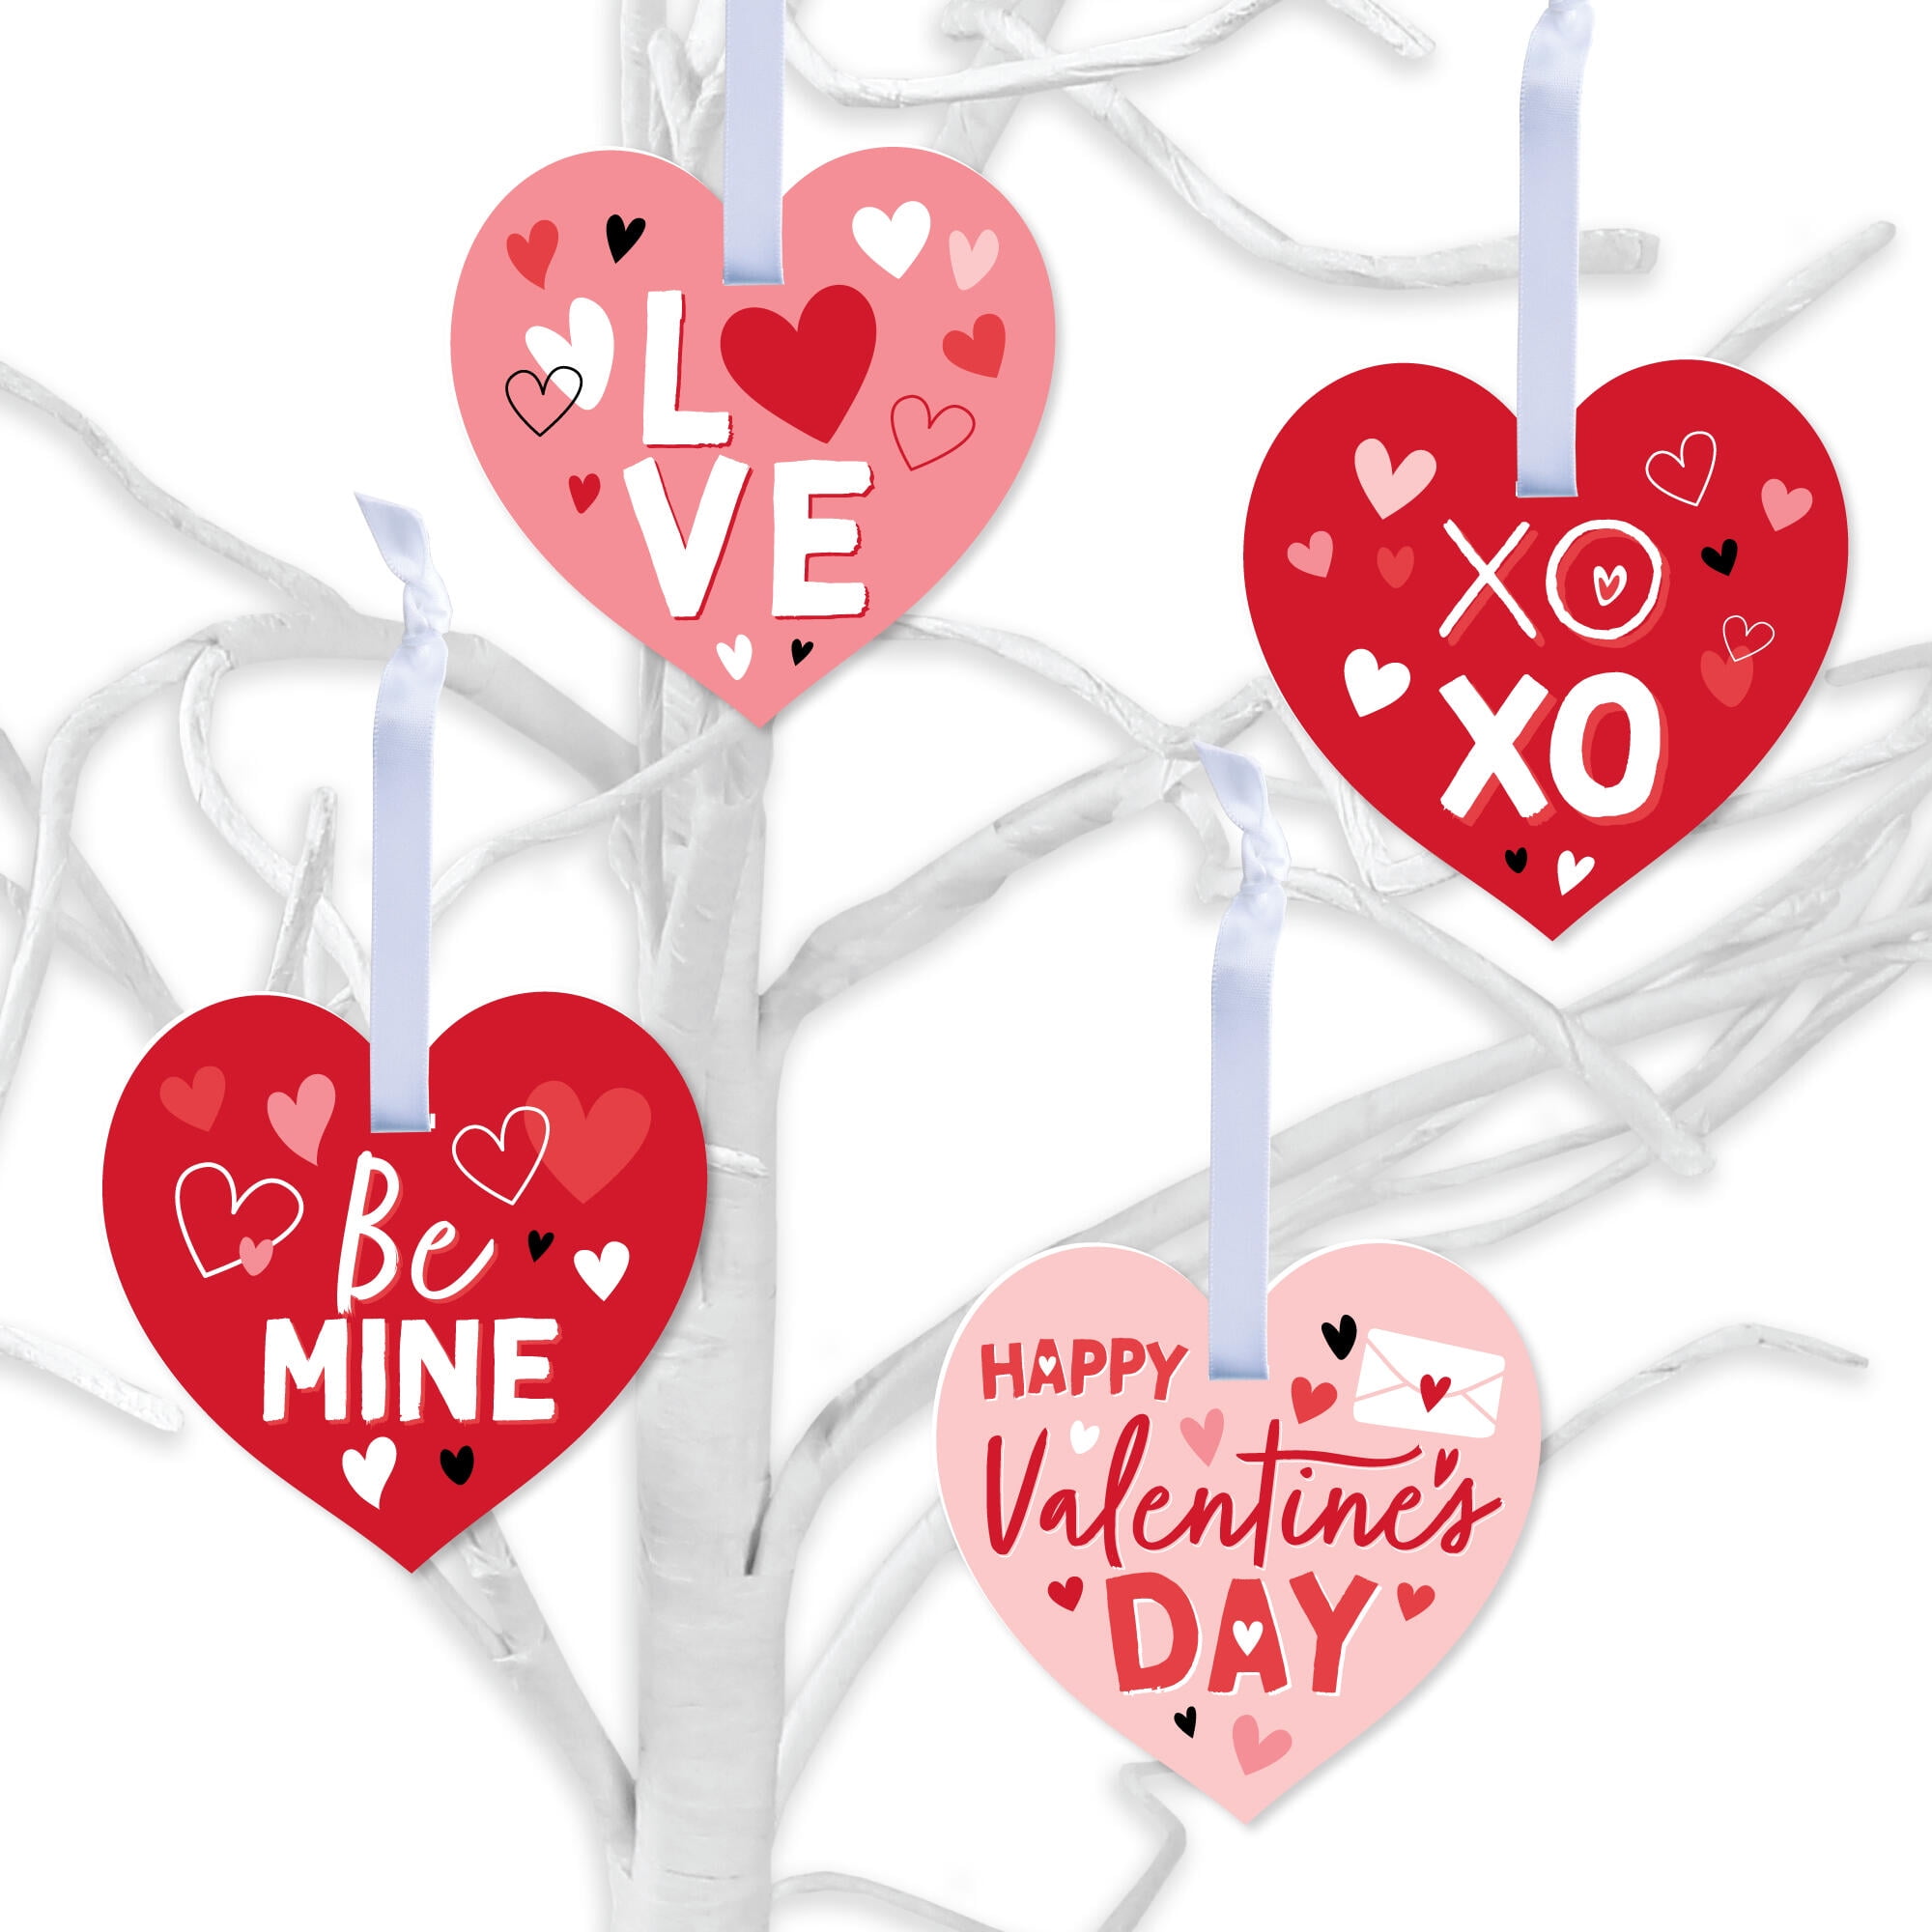 28 Super-Creative Valentine's Day Decor Ideas to Inspire Romance  Diy  valentine's day decorations, Diy valentines decorations, Valentines diy